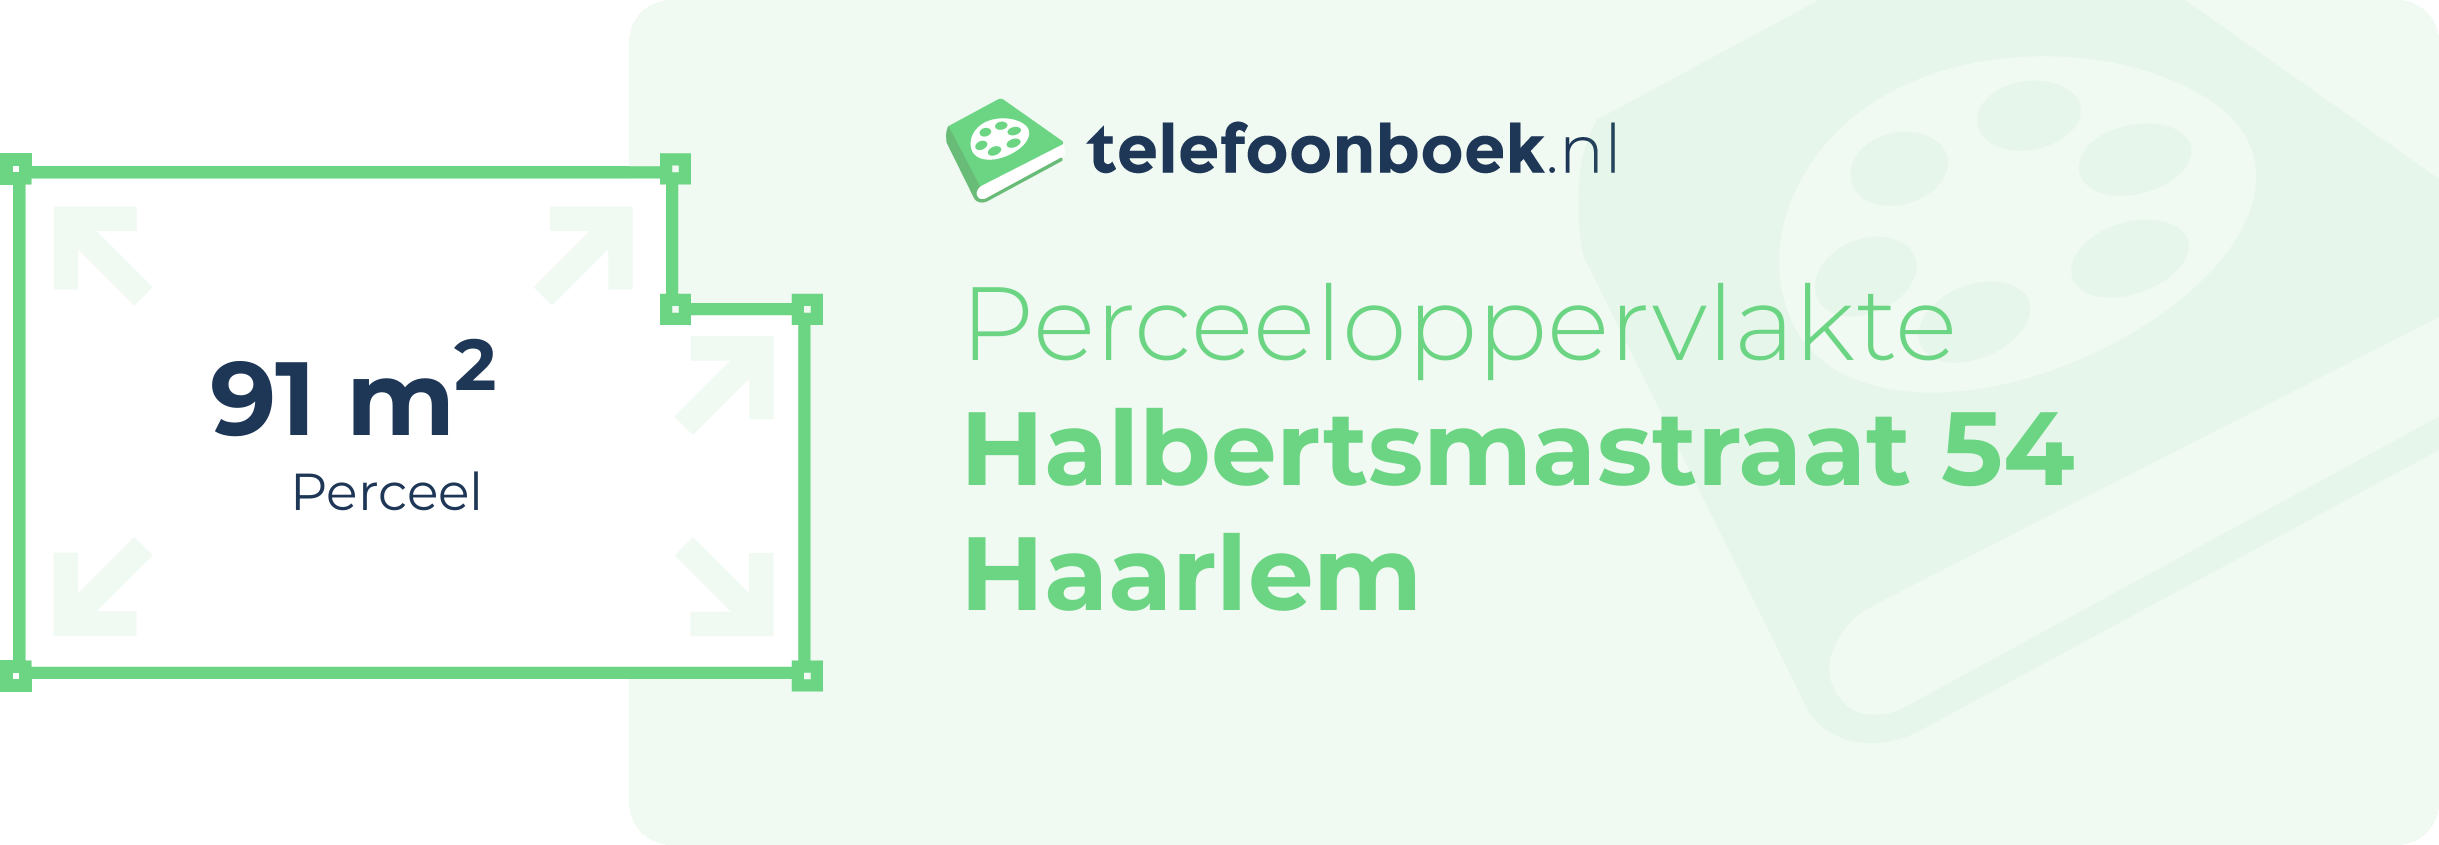 Perceeloppervlakte Halbertsmastraat 54 Haarlem